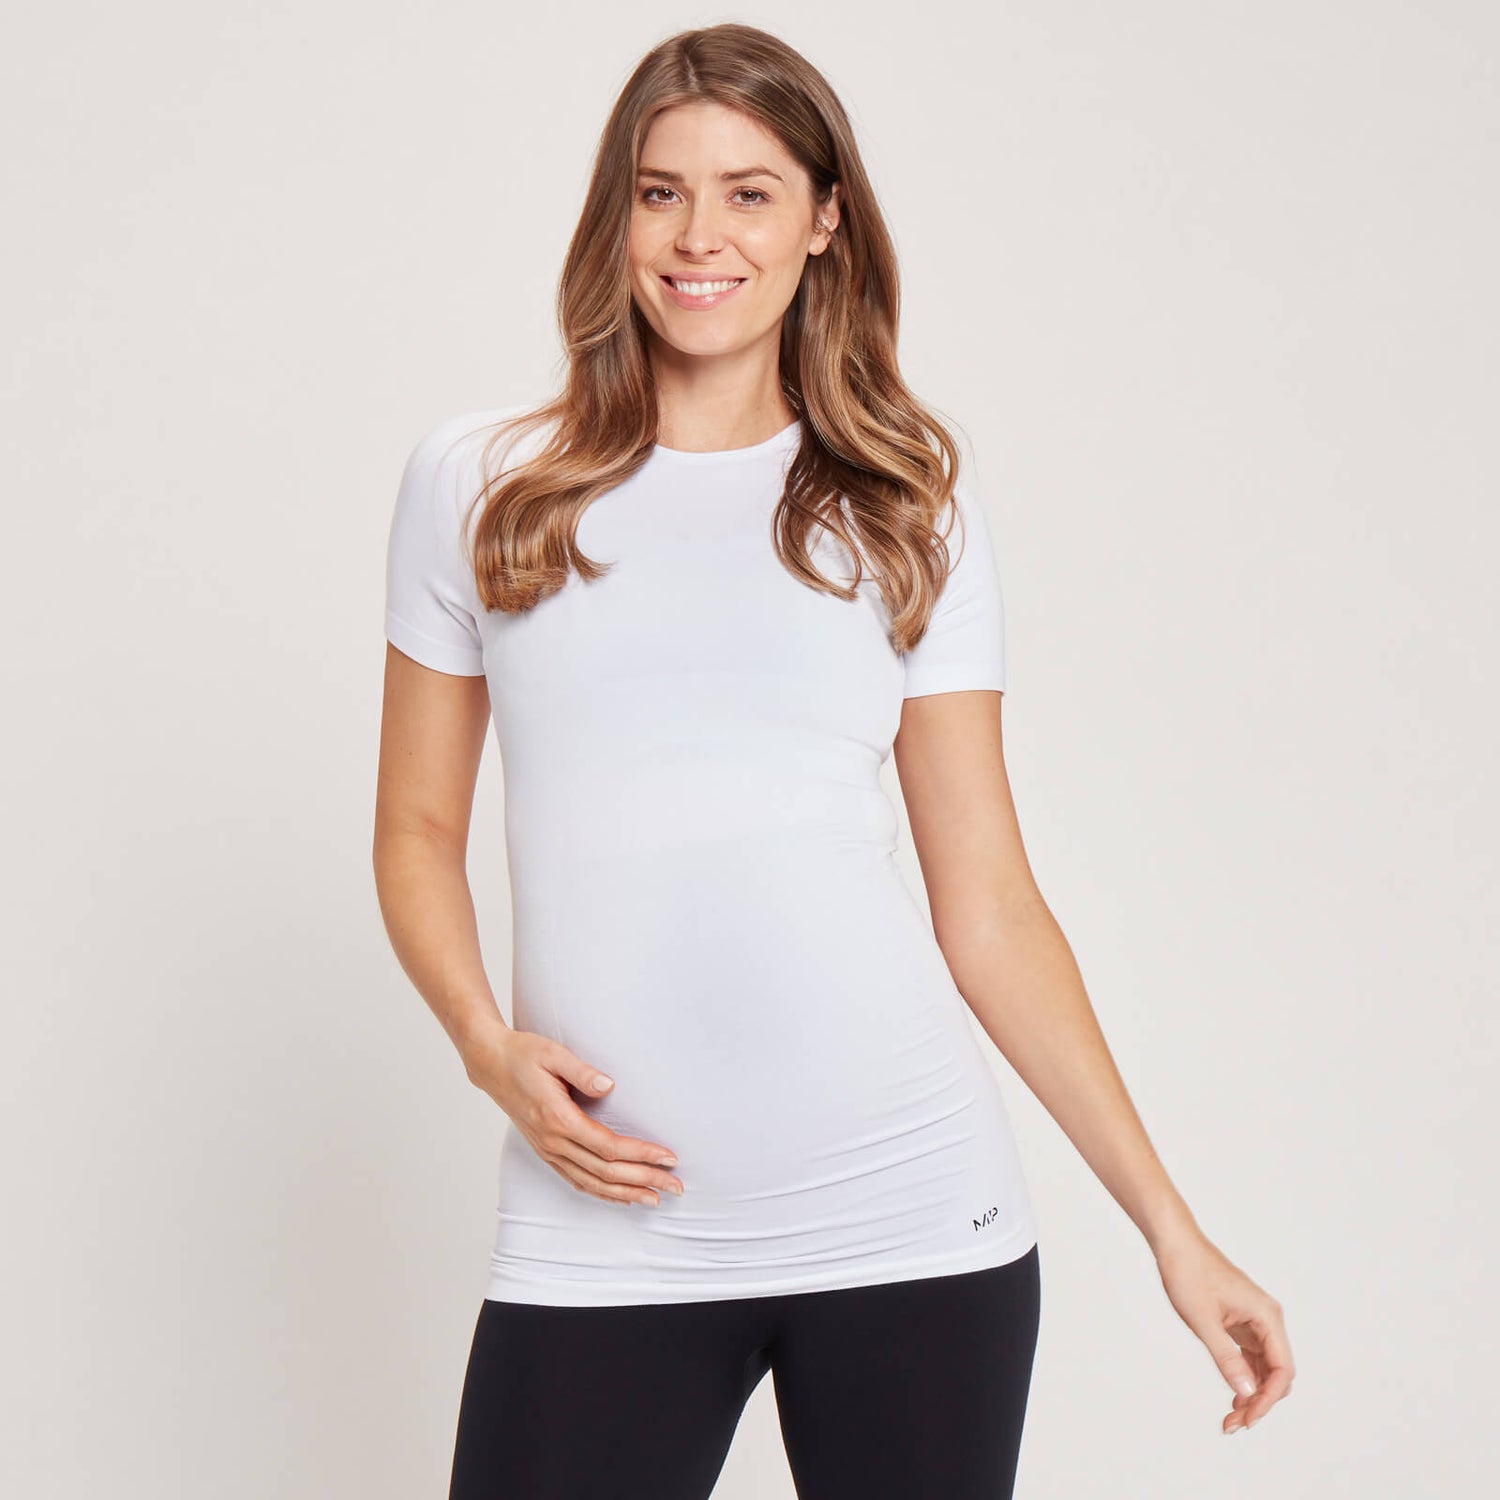 Γυναικείο Κοντομάνικο Μπλουζάκι Εγκυμοσύνης MP Χωρίς Ραφές - Λευκό - XS